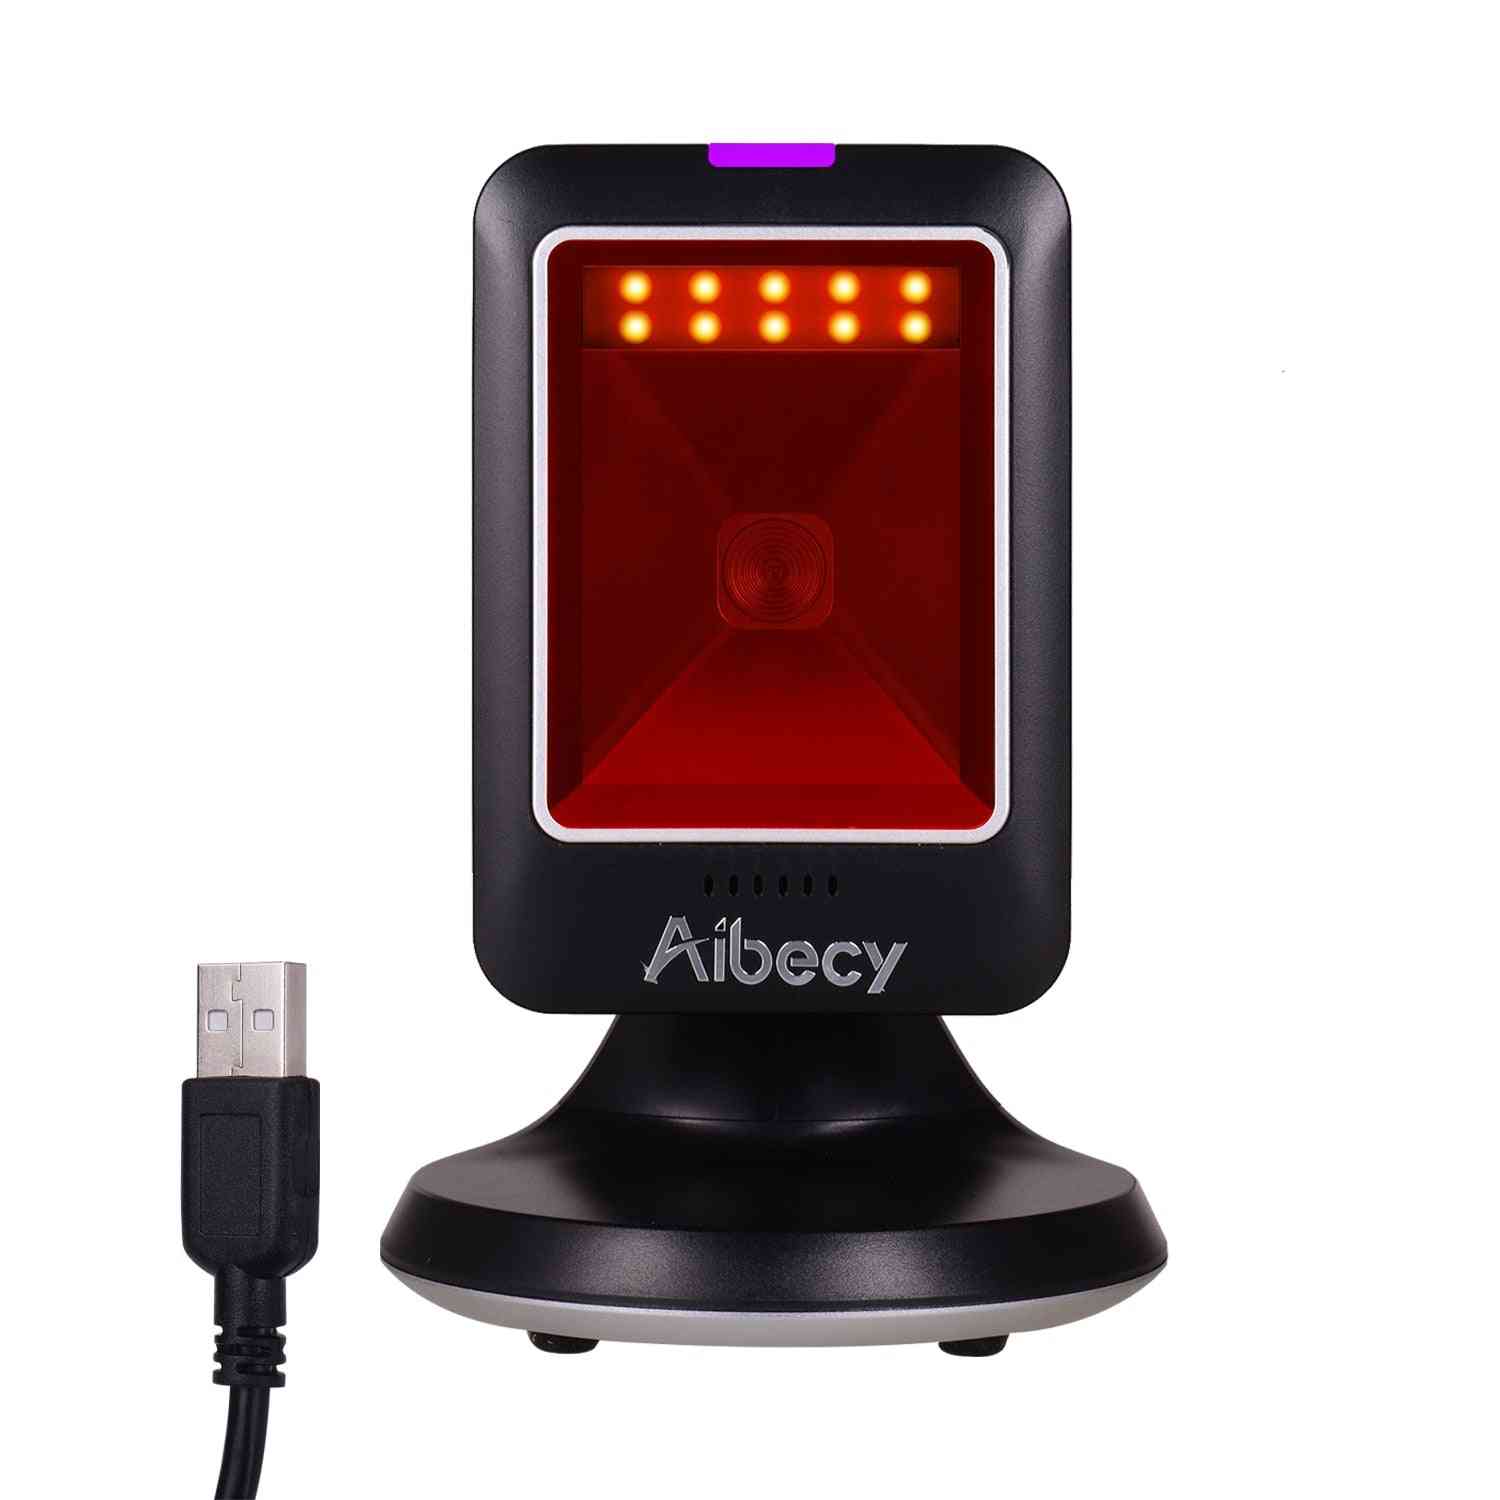 Aibecy mp6300y 1d / 2d / qr omnidirektionaler Barcode-Scanner, USB-Barcode-Lesegerät / cmos Freisprech-QR-Code-Scanner für den Einzelhandel